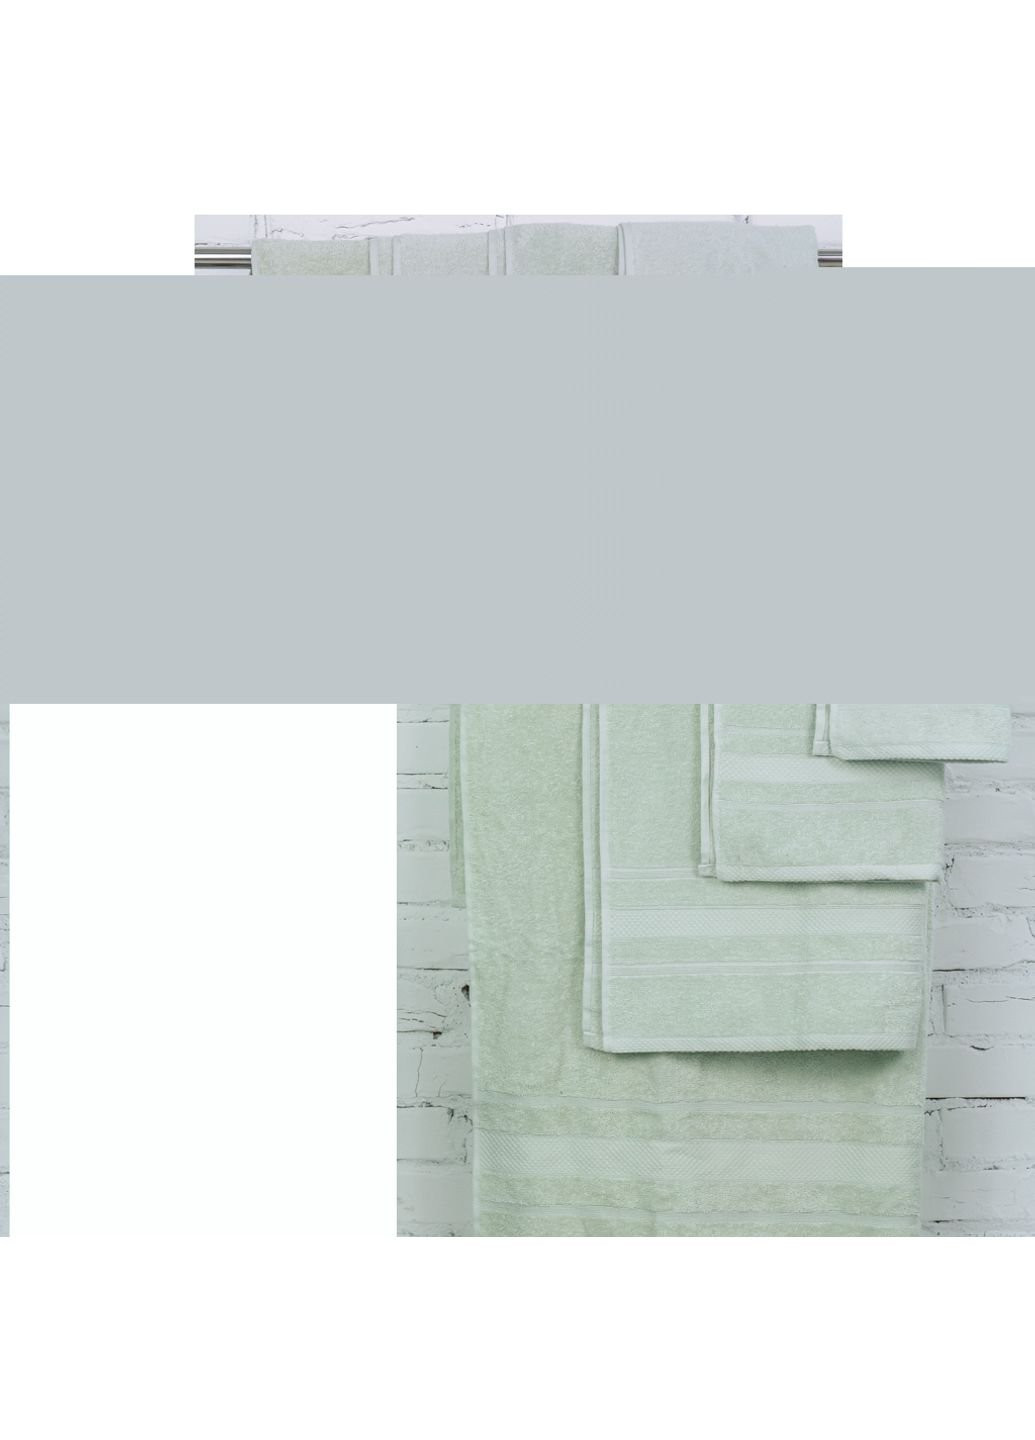 Mirson полотенце набор банный №5008 softness menthol 40x70, 50x90, 70x140, 10 (2200003183320) мятный производство - Украина